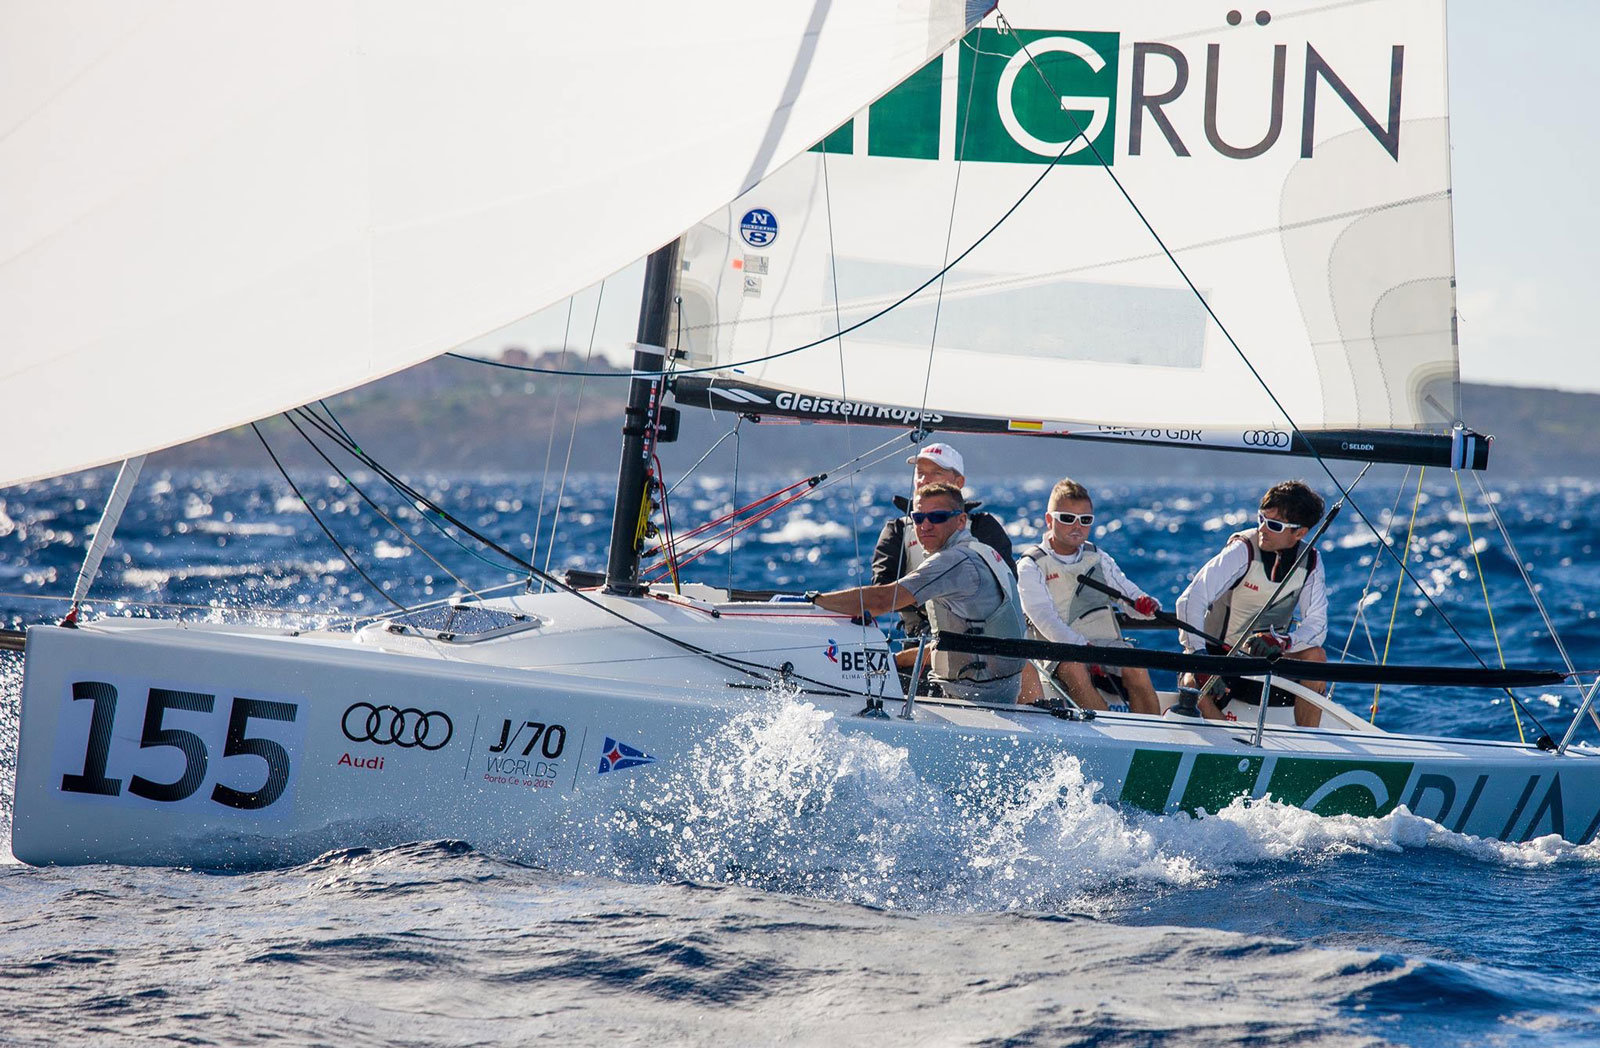 Das GRÜN Sailing Team wird auch 2018 wieder in See stechen und dabei von der GRÜN Software AG als Sponsor unterstützt.